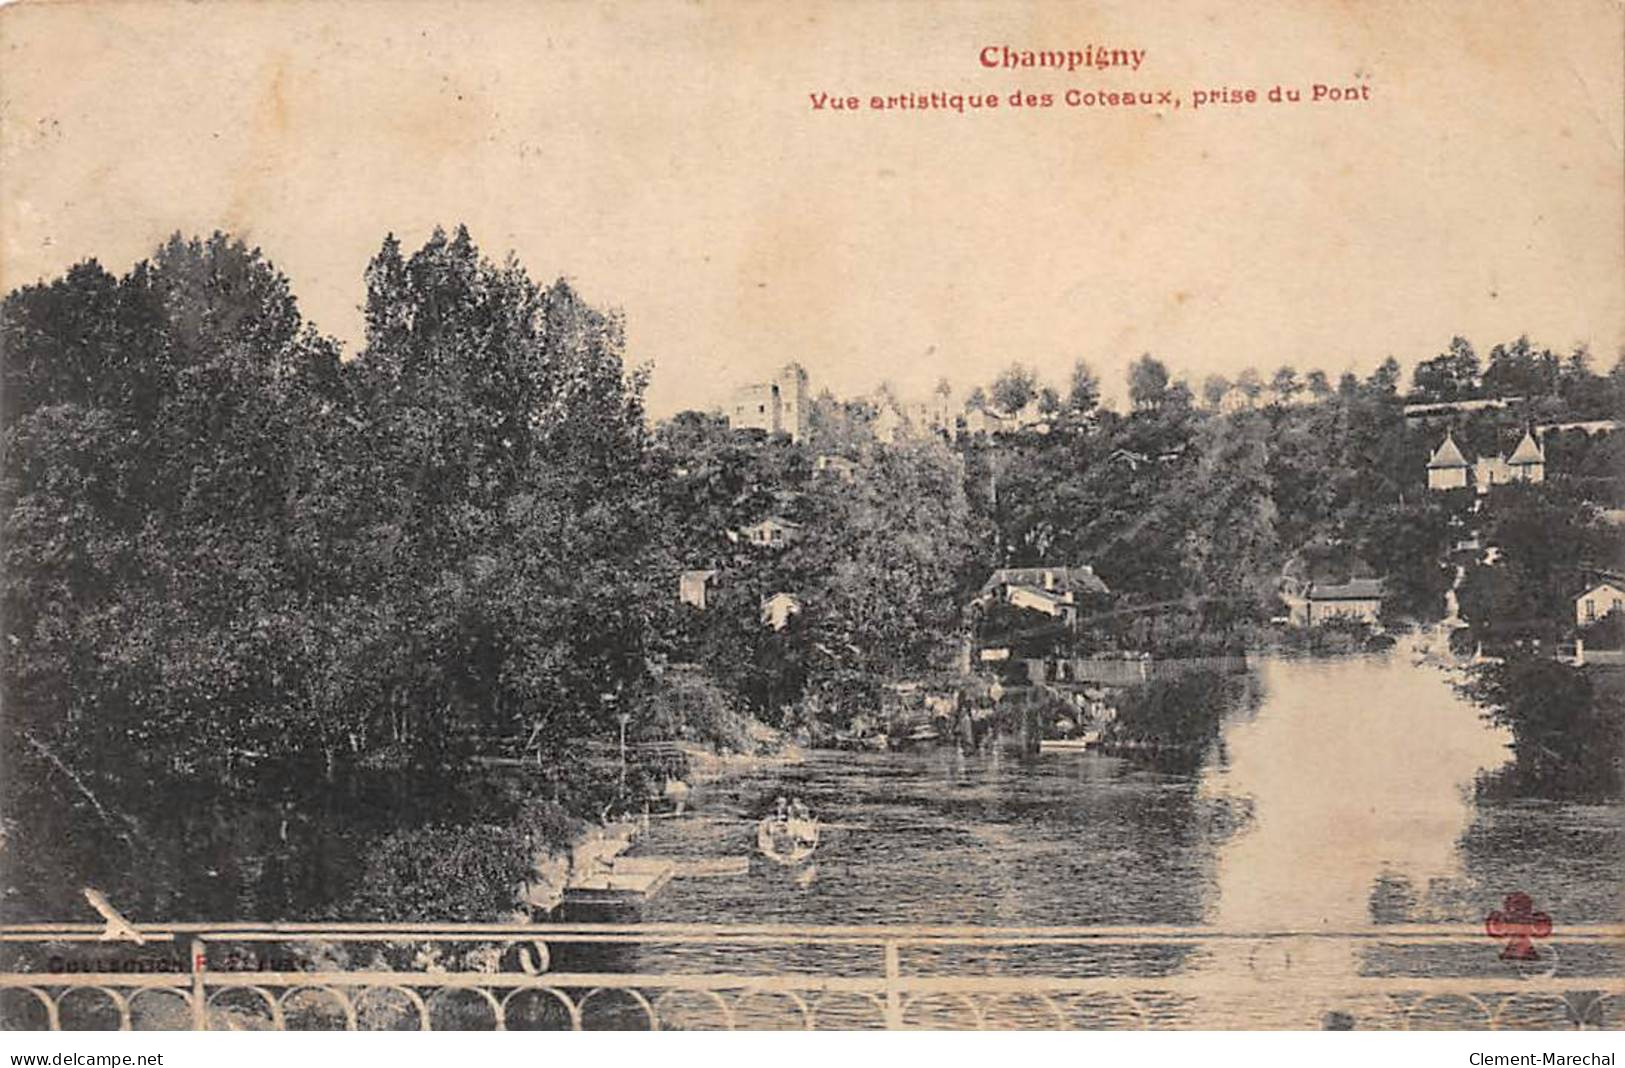 CHAMPIGNY - Vue Artistique Des Coteaux, Prise Du Pont - état - Champigny